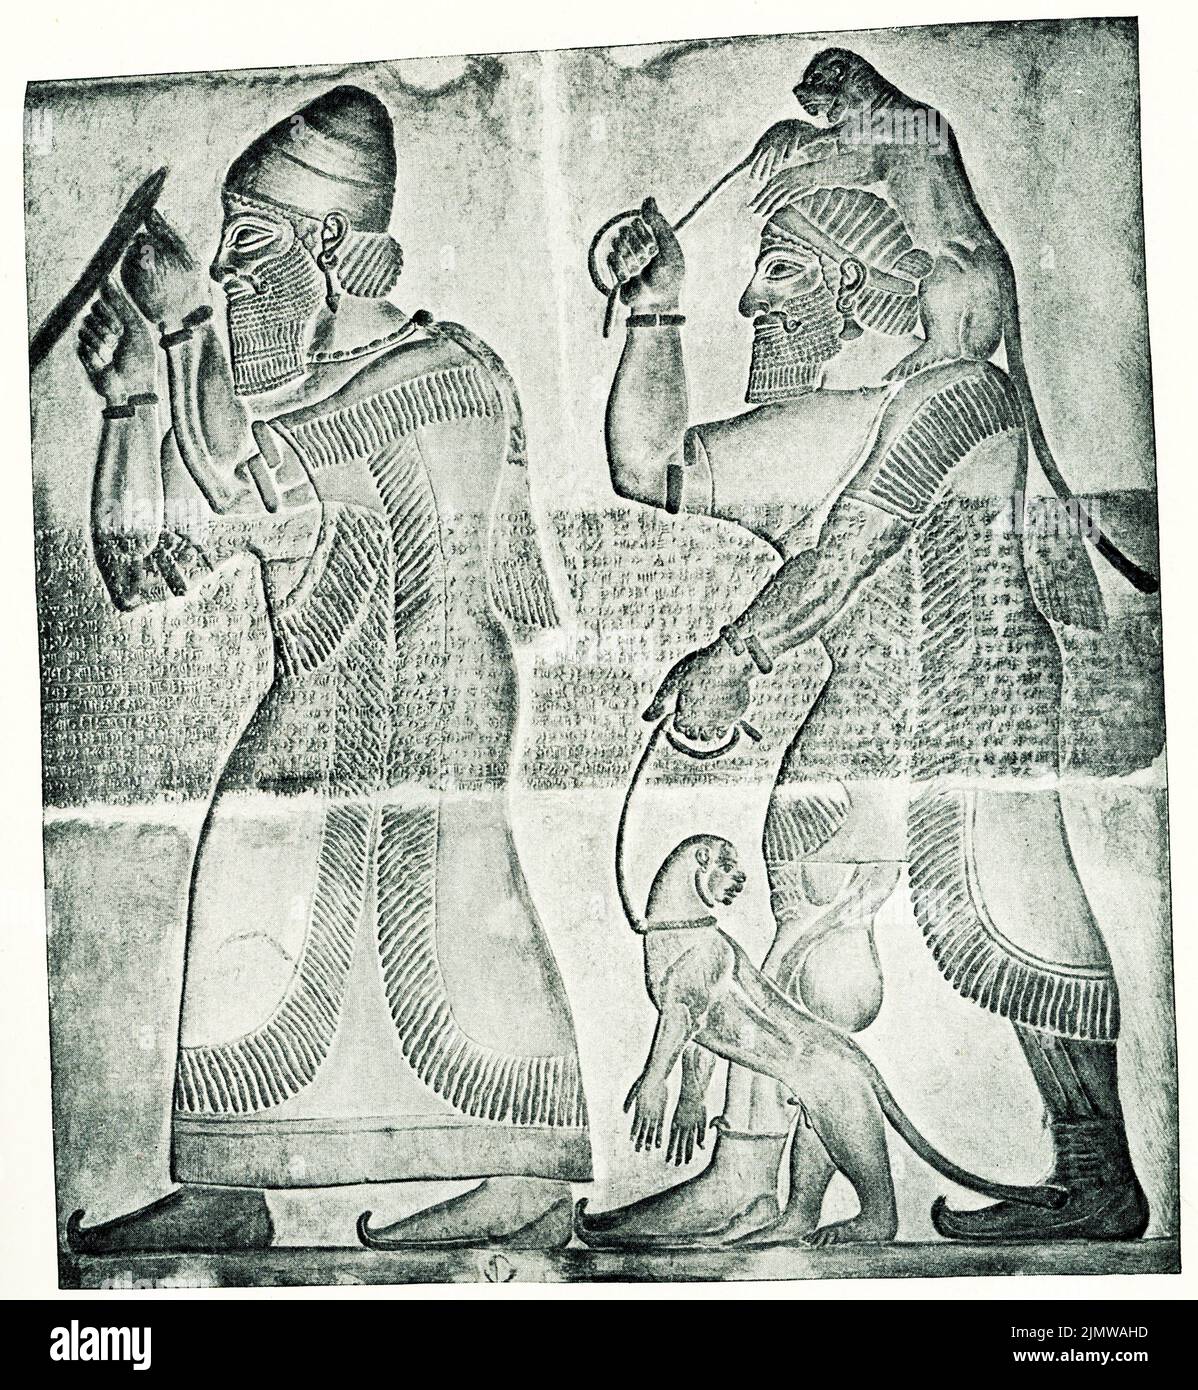 Auf der Bildunterschrift von 1910 steht ein Prinz aus Musri, der dem assyrischen König Tribut zollt. Das Relief befindet sich im Mritish Museum in London. Stockfoto